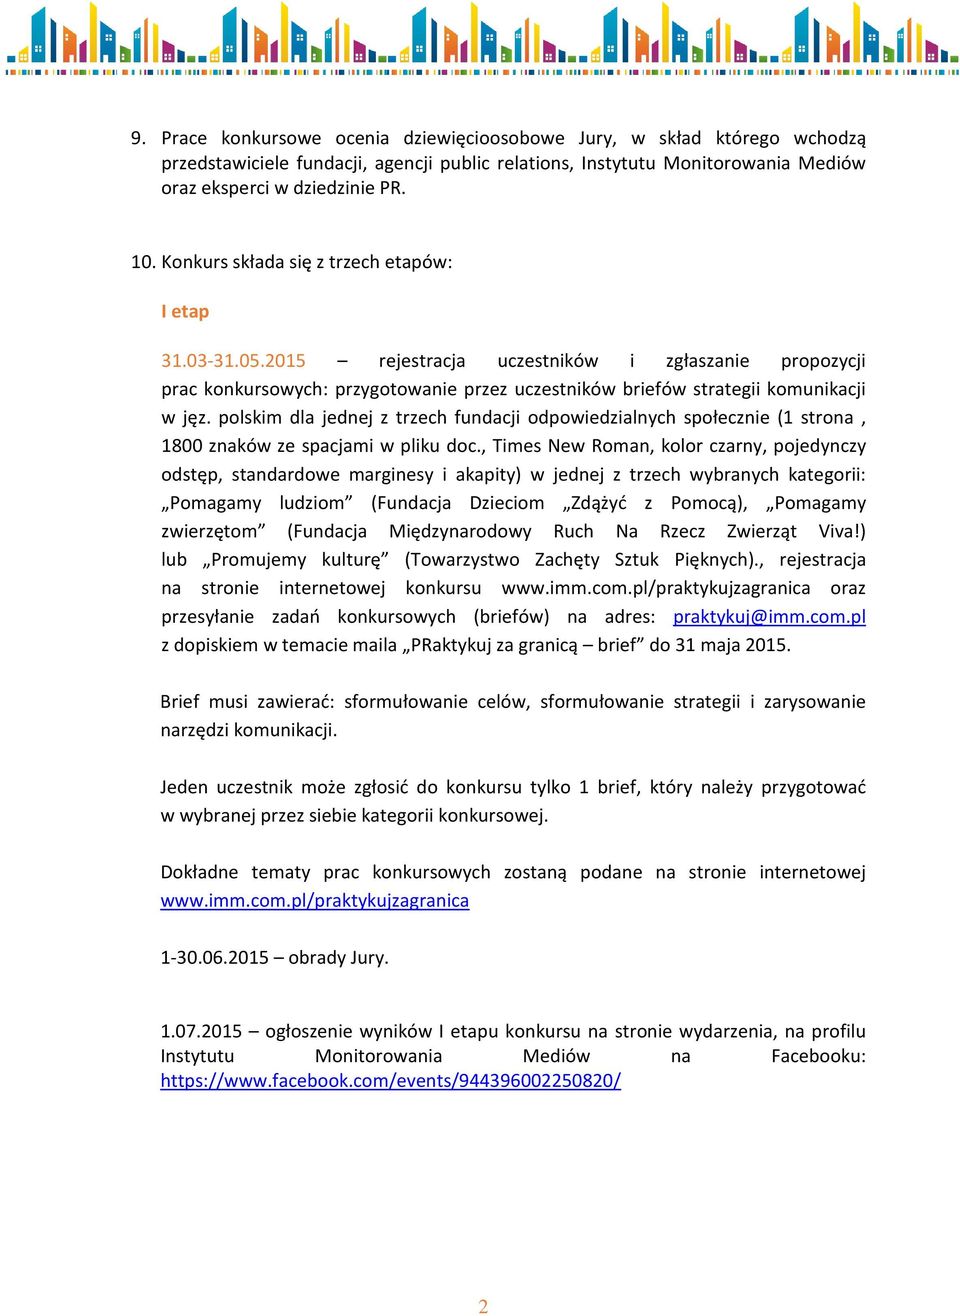 polskim dla jednej z trzech fundacji odpowiedzialnych społecznie (1 strona, 1800 znaków ze spacjami w pliku doc.